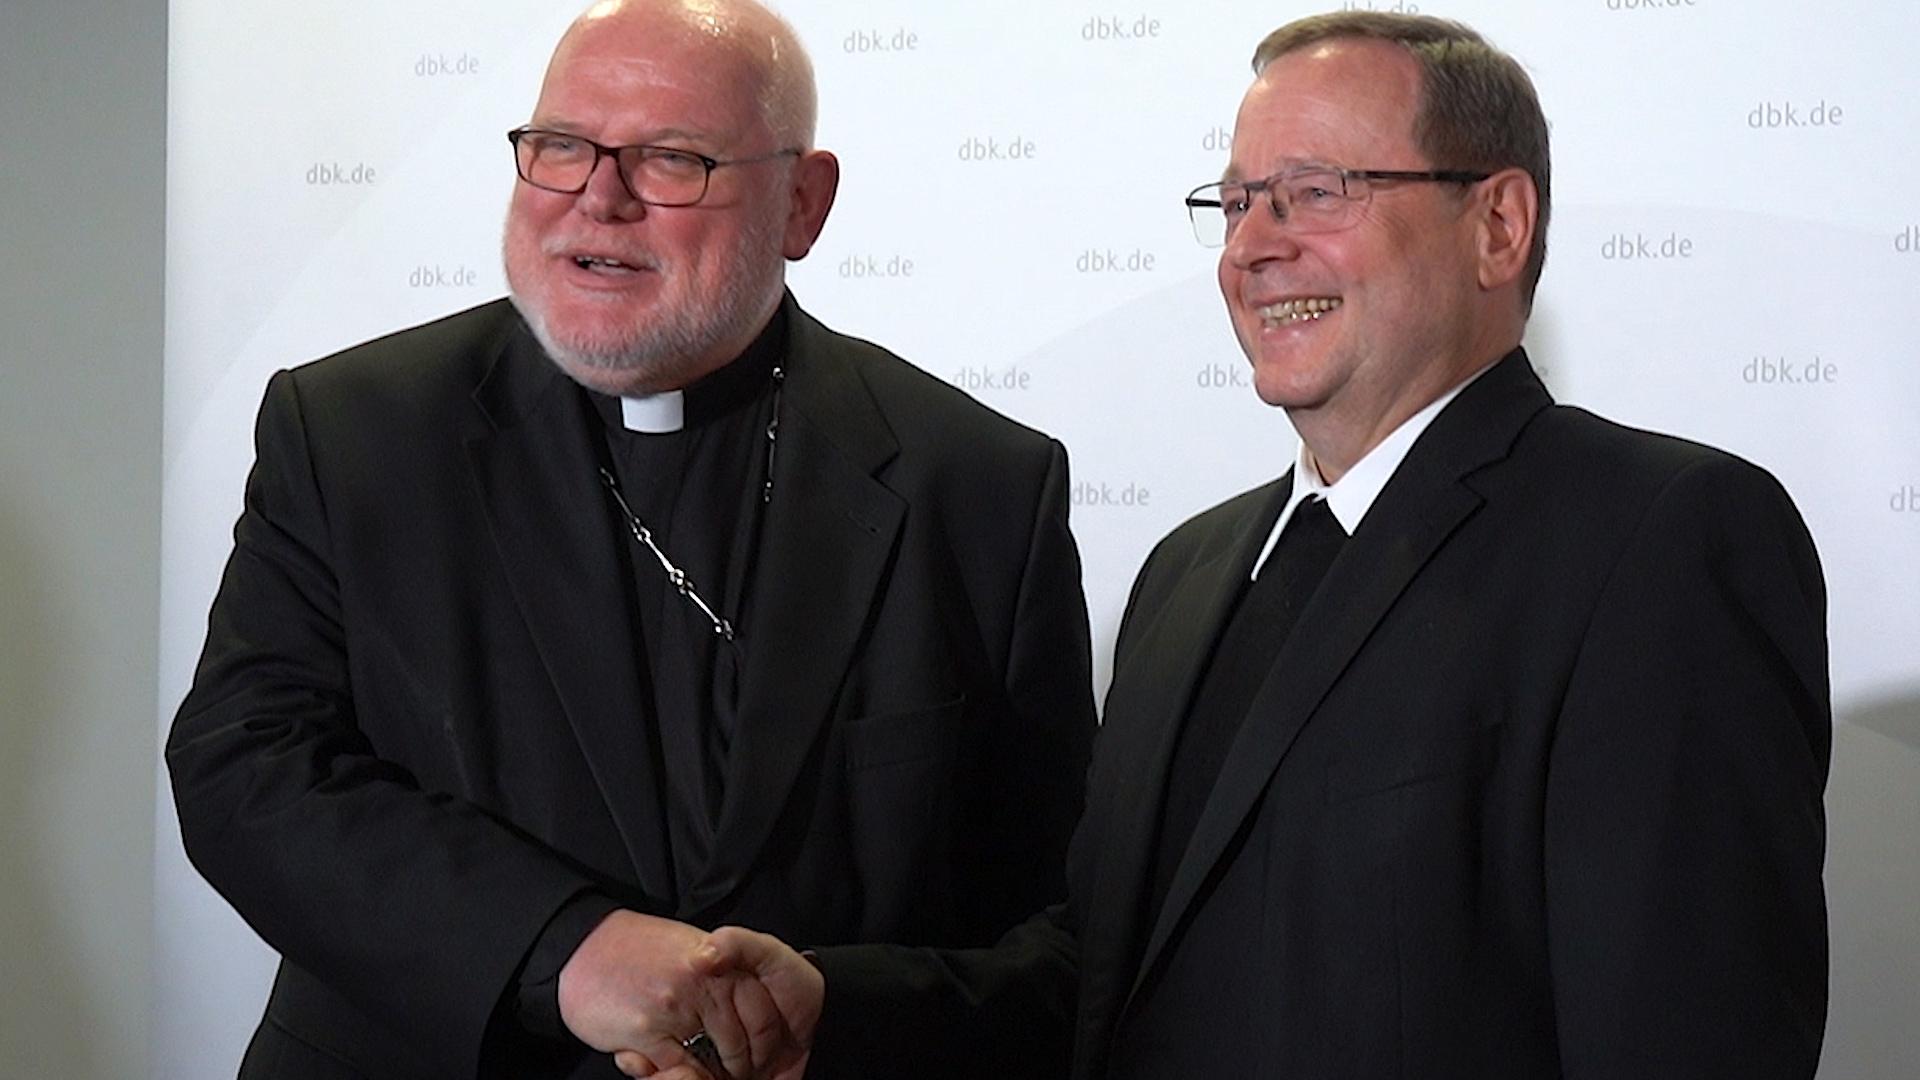 Bischof Bätzing wird Vorsitzender - Mainzer Bischöfe gratulieren